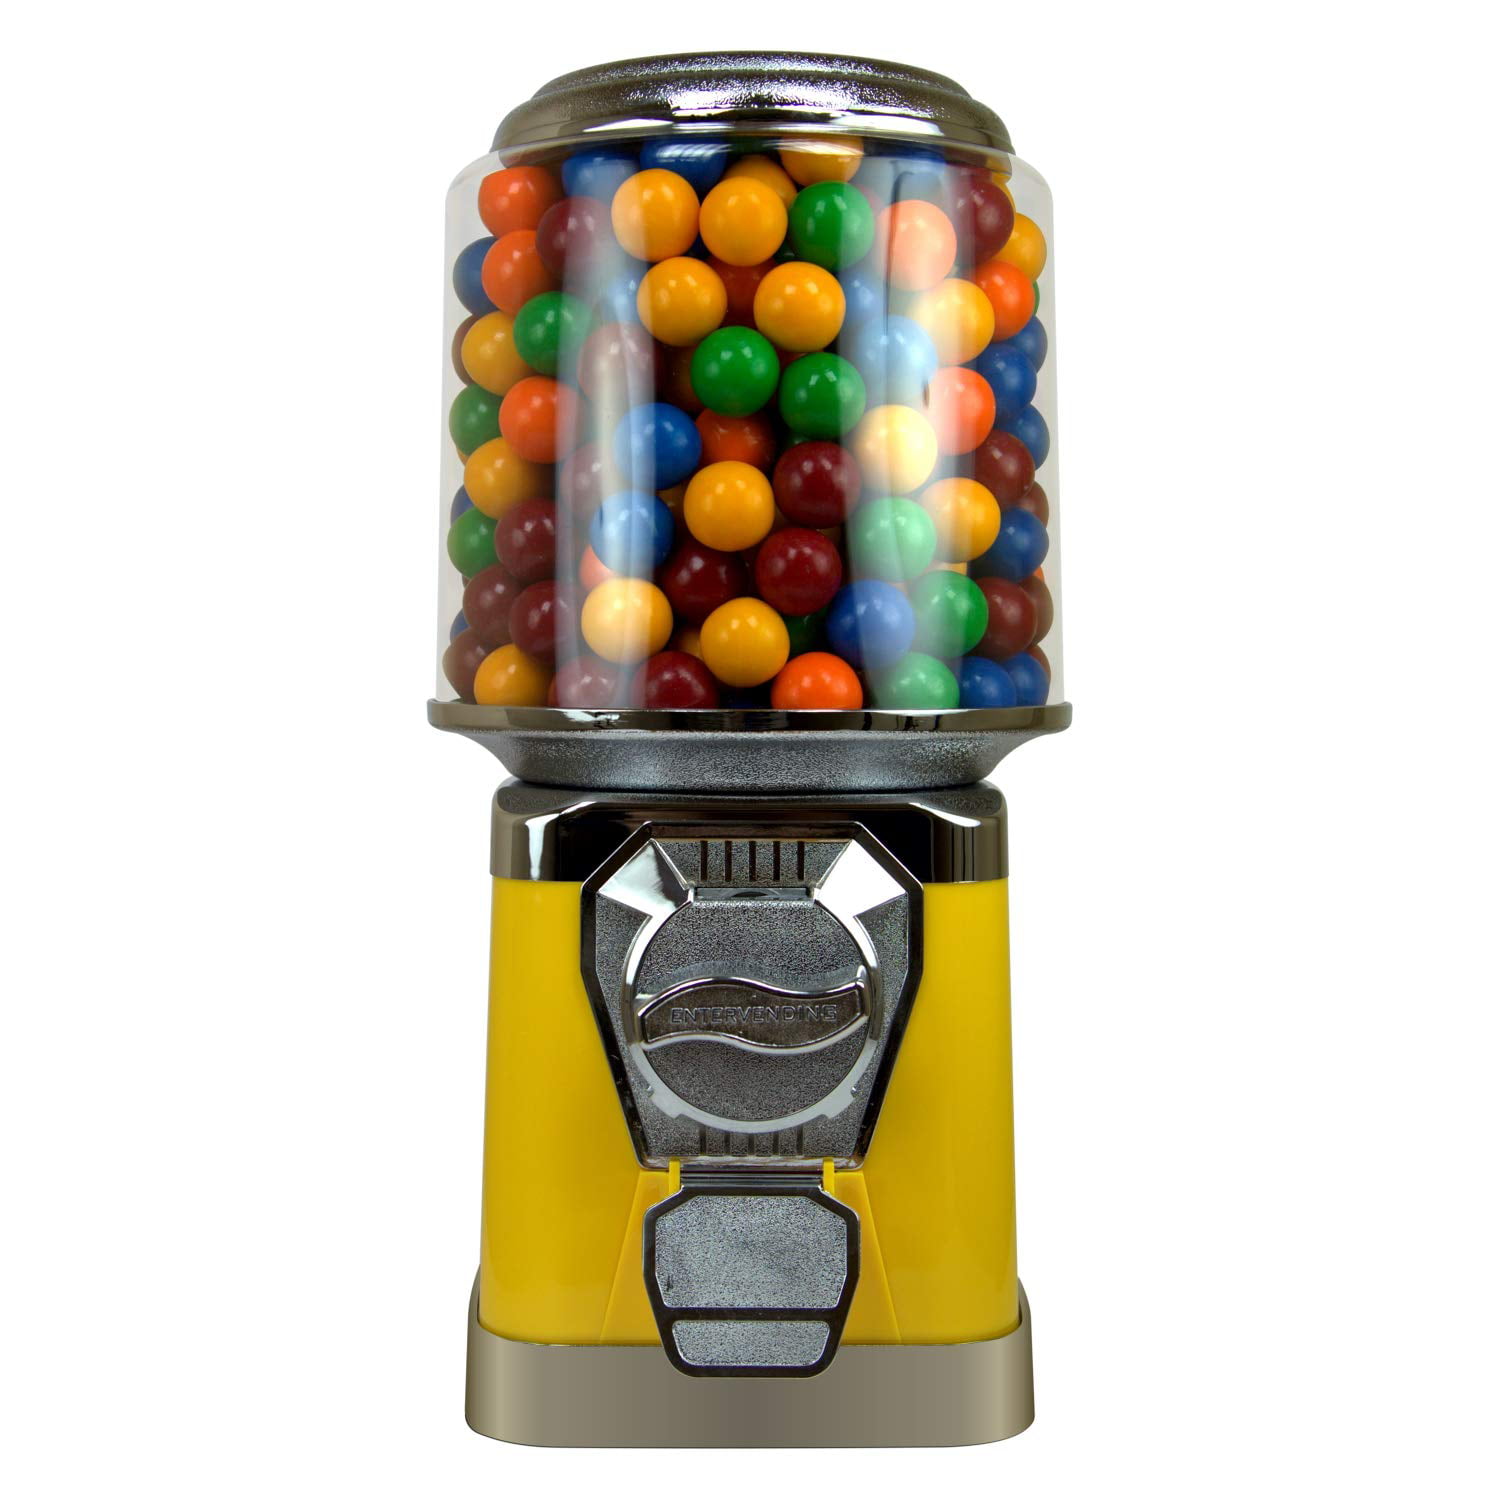 Gumball Bank Spiral Dispenser Bubble Gum Candy Vending Machine Stand 340G Balls 